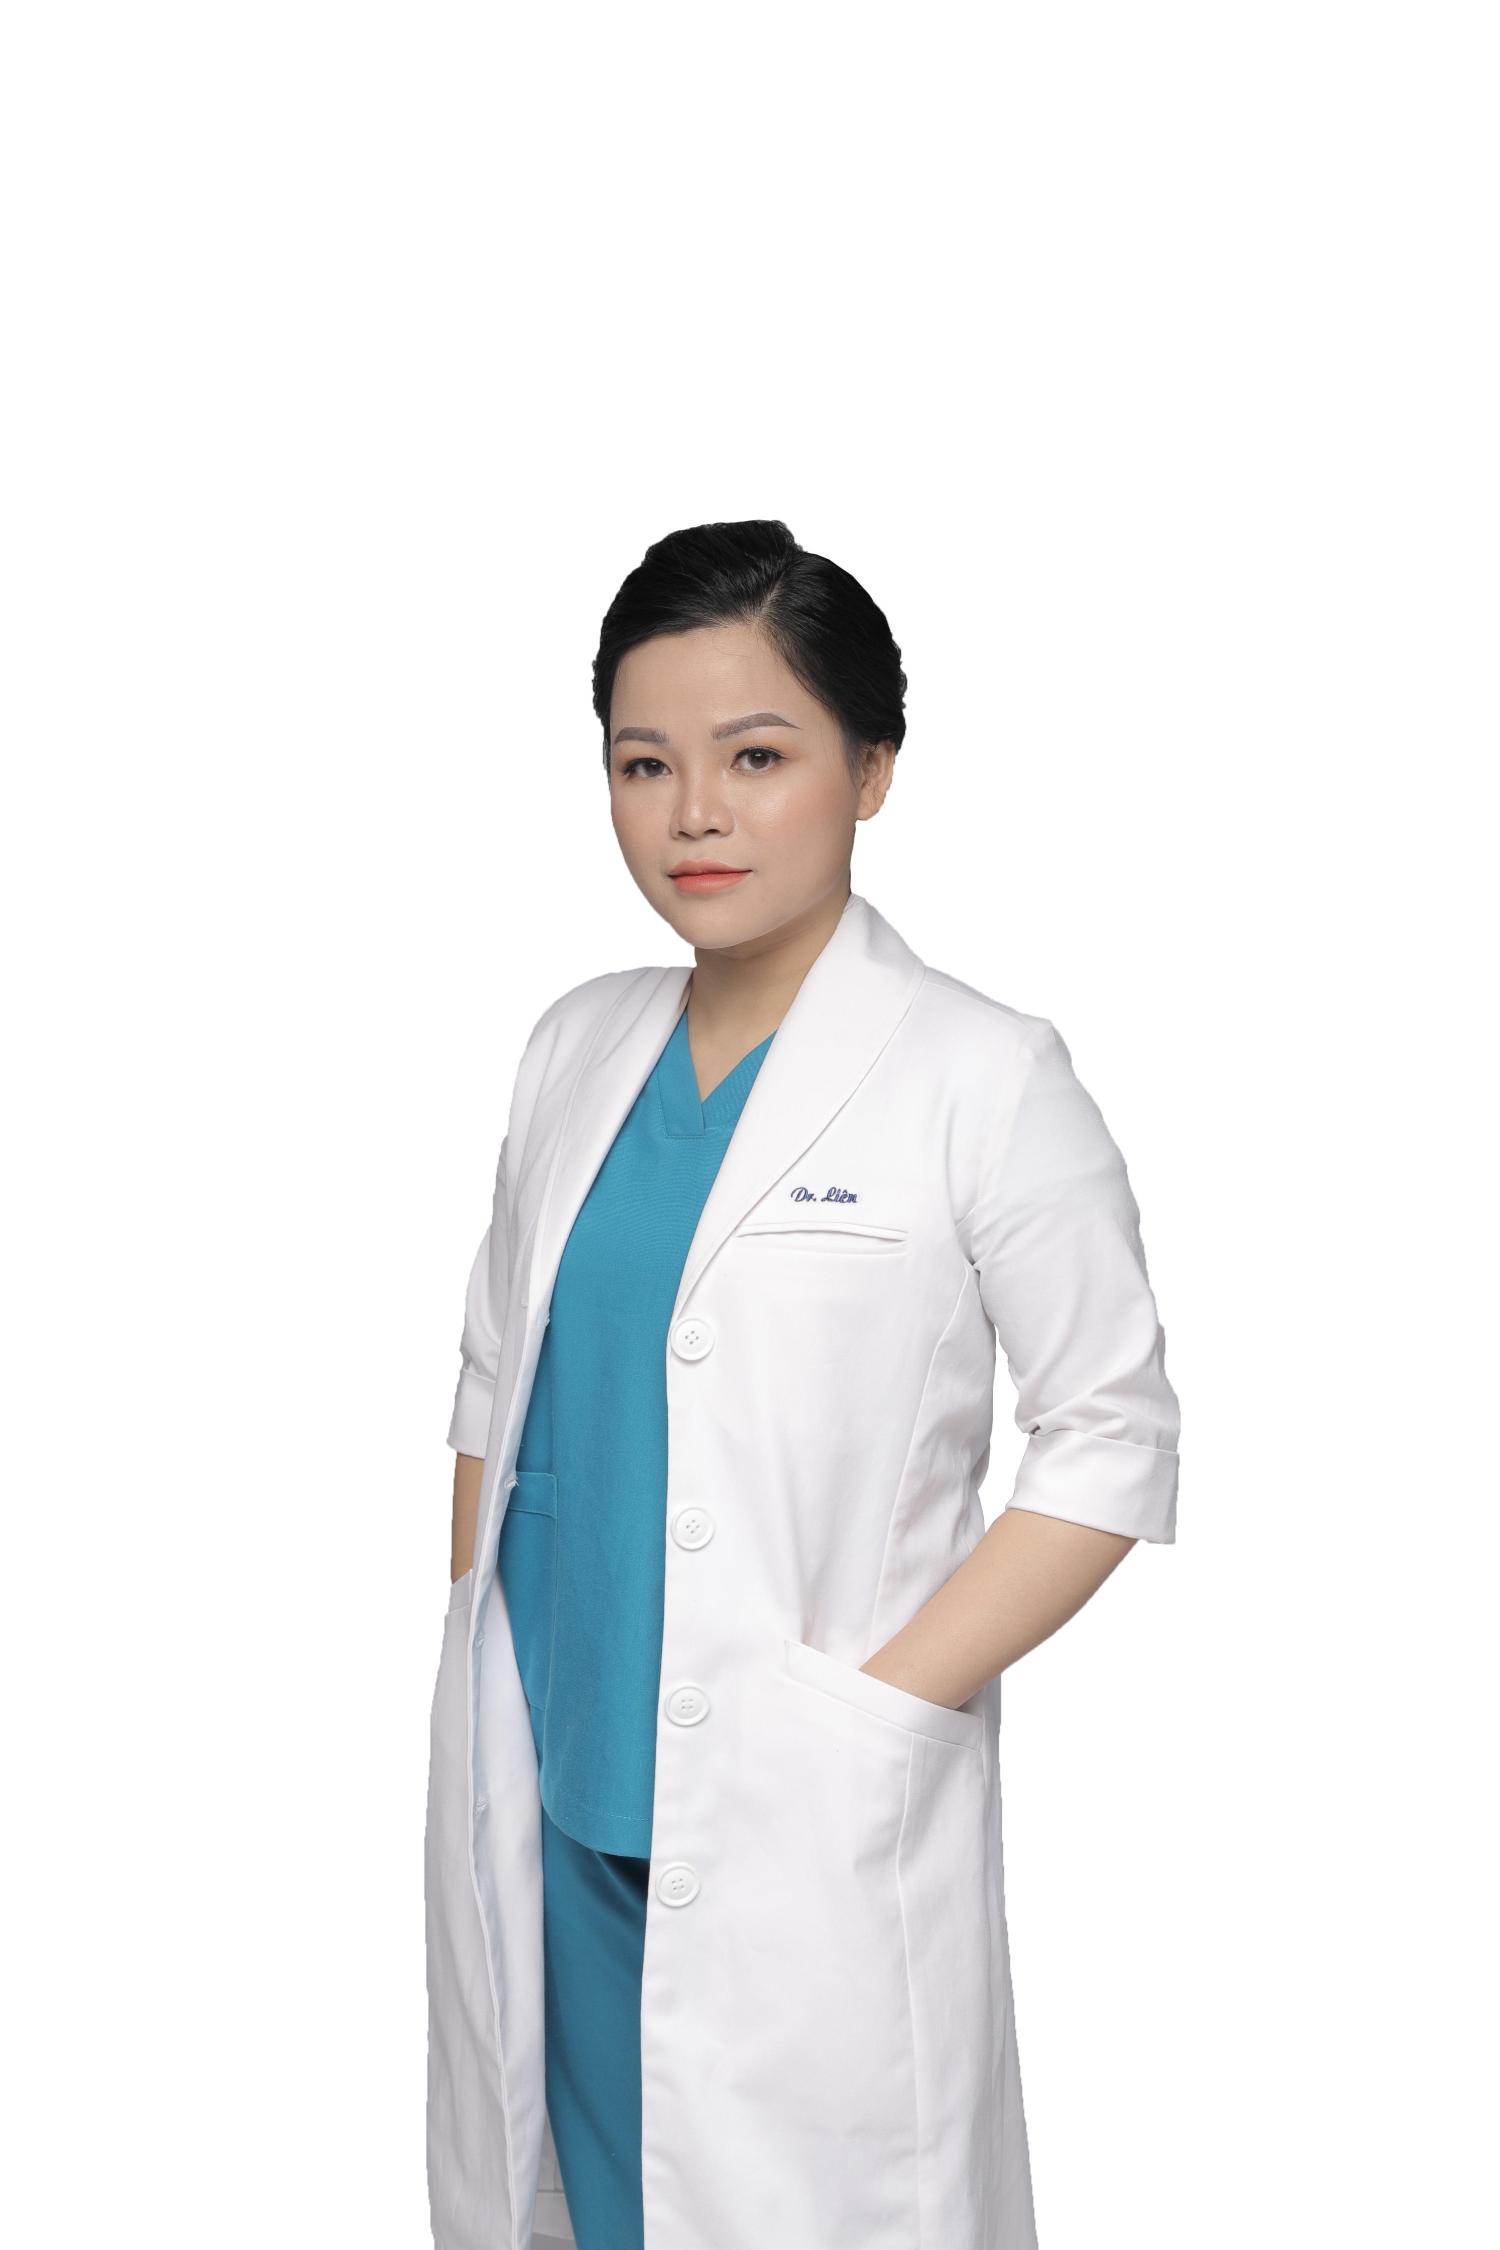 Dr.Trần Thị Liên